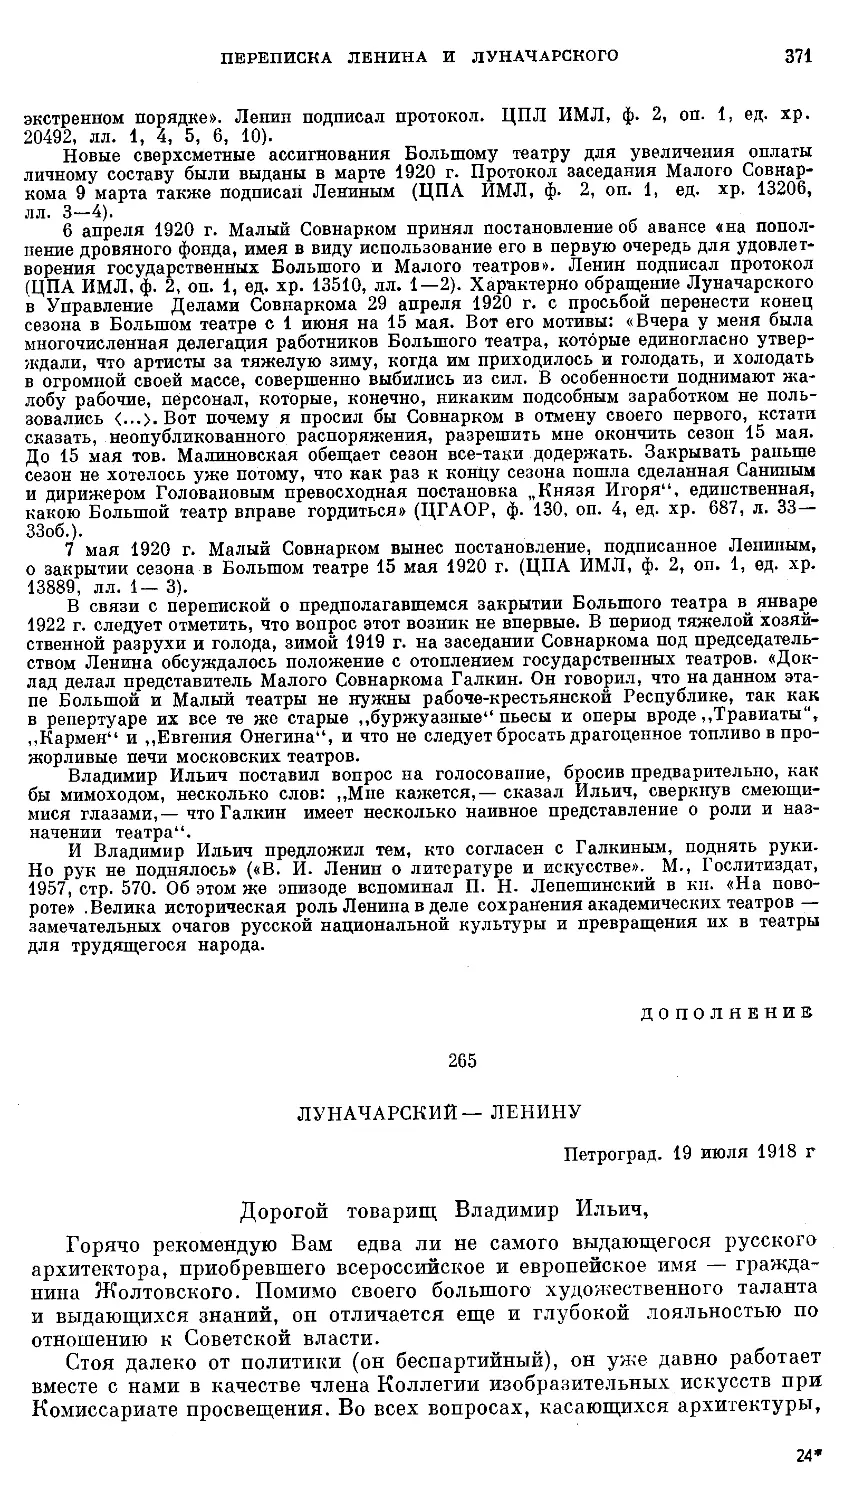 Дополнение: ЛУНАЧАРСКИЙ—ЛЕНИНУ. 19 июля 1918 г.